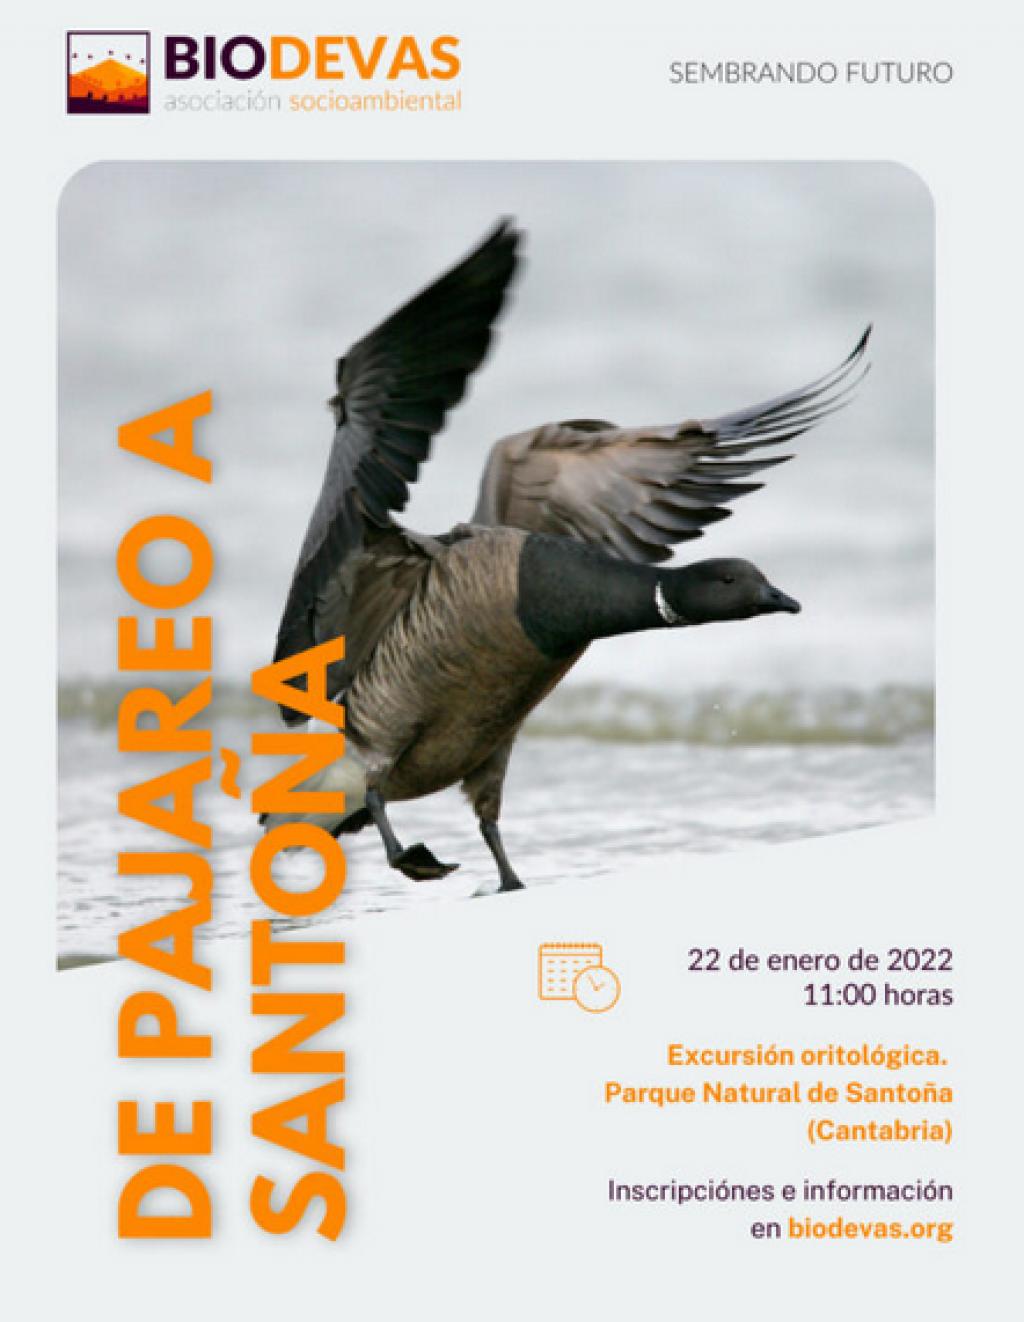 El Tapin - La Asociación Biodevas  organiza una excursión ornitológica a Santoña el 22 de enero